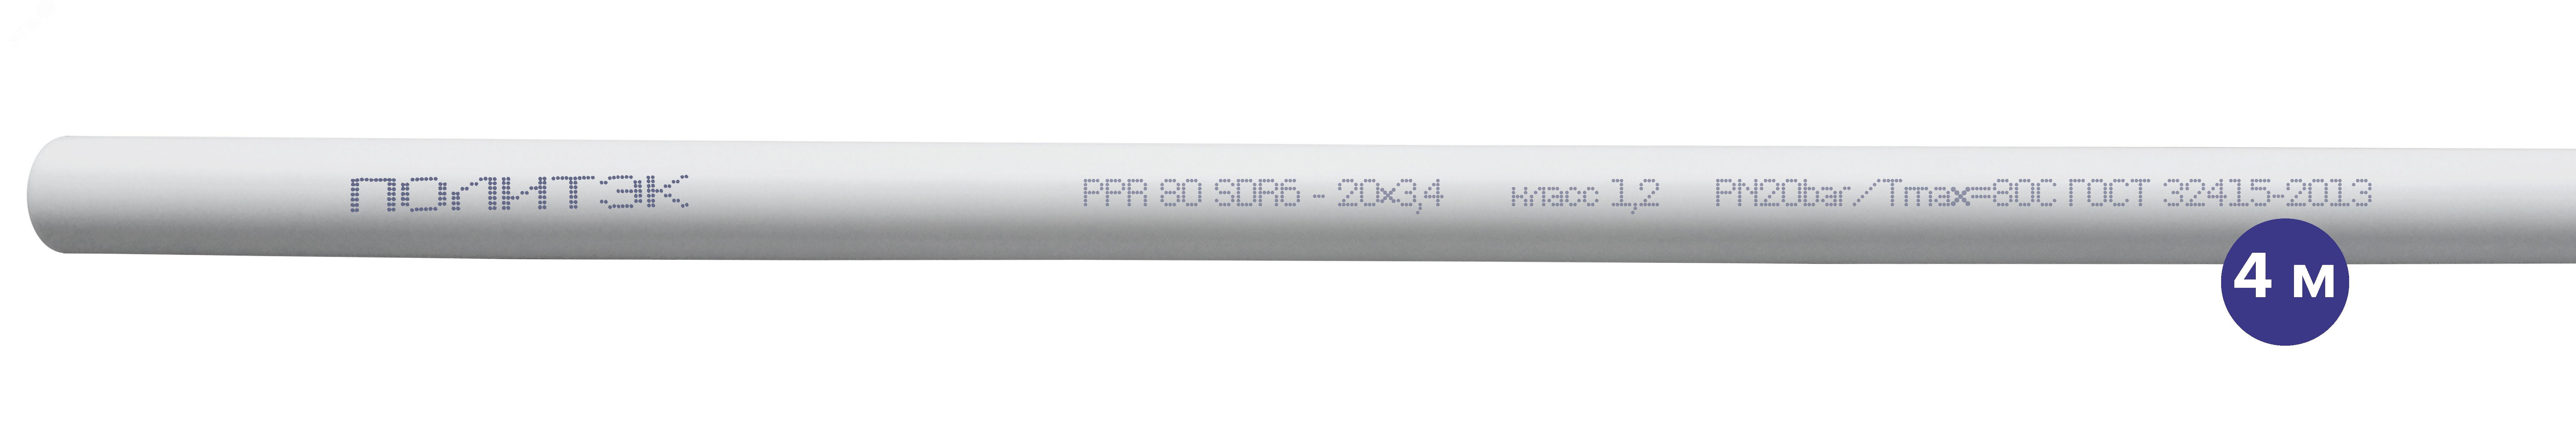 Труба полипропиленовая 20 х 3.4 SDR 6 PN 20 PPR белая, хлыст 4м 9002020034 Политэк - превью 2